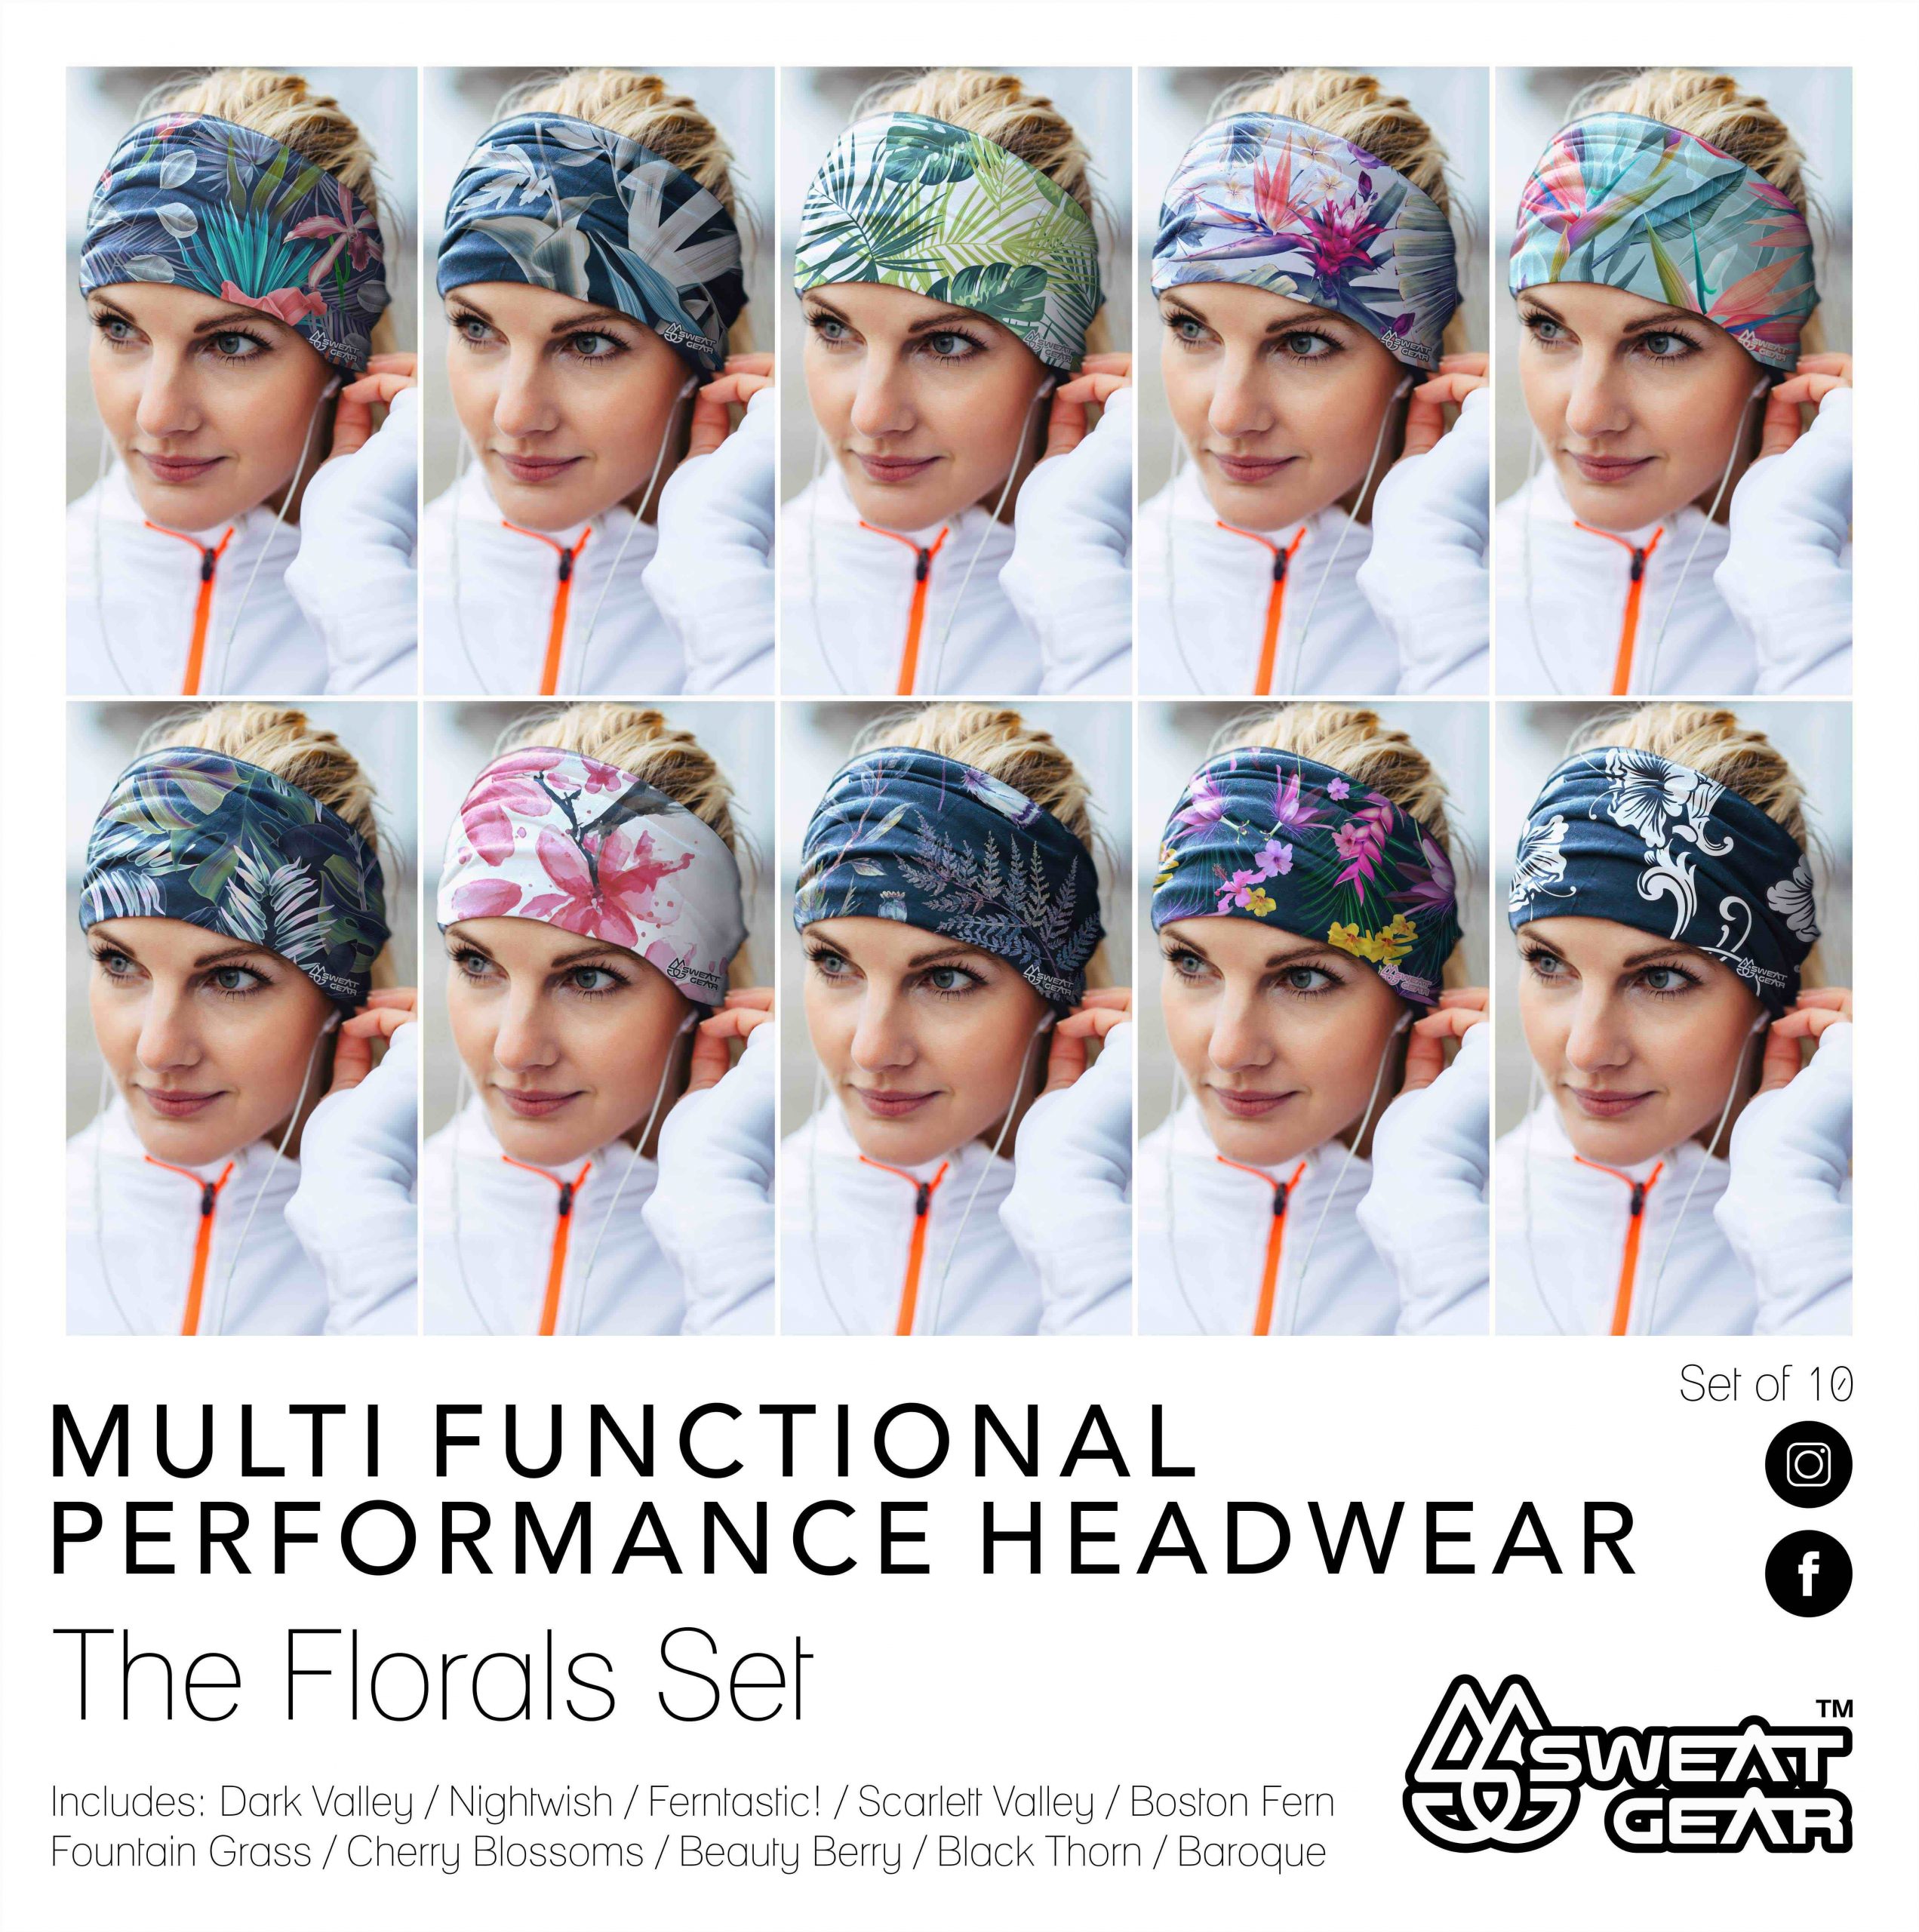 Sweat Gear Online 2020 - Multifunctional headwear The Florals Set (10)